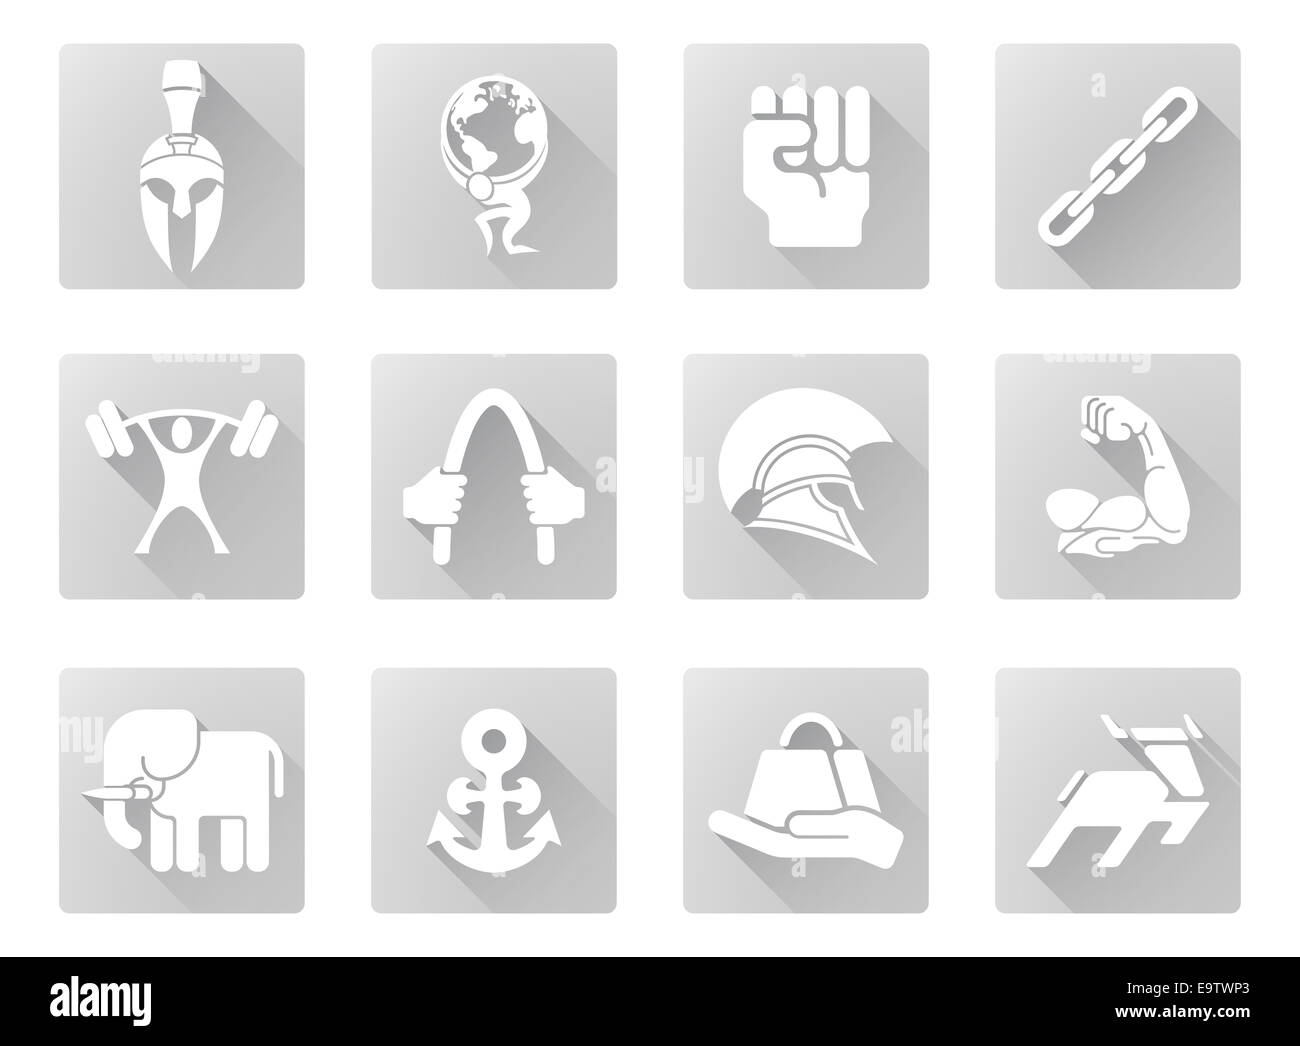 Force conceptuelle icon set d'icônes relatives à la notion de force ou d'être forte dans un appartement moderne de style d'ombre Banque D'Images